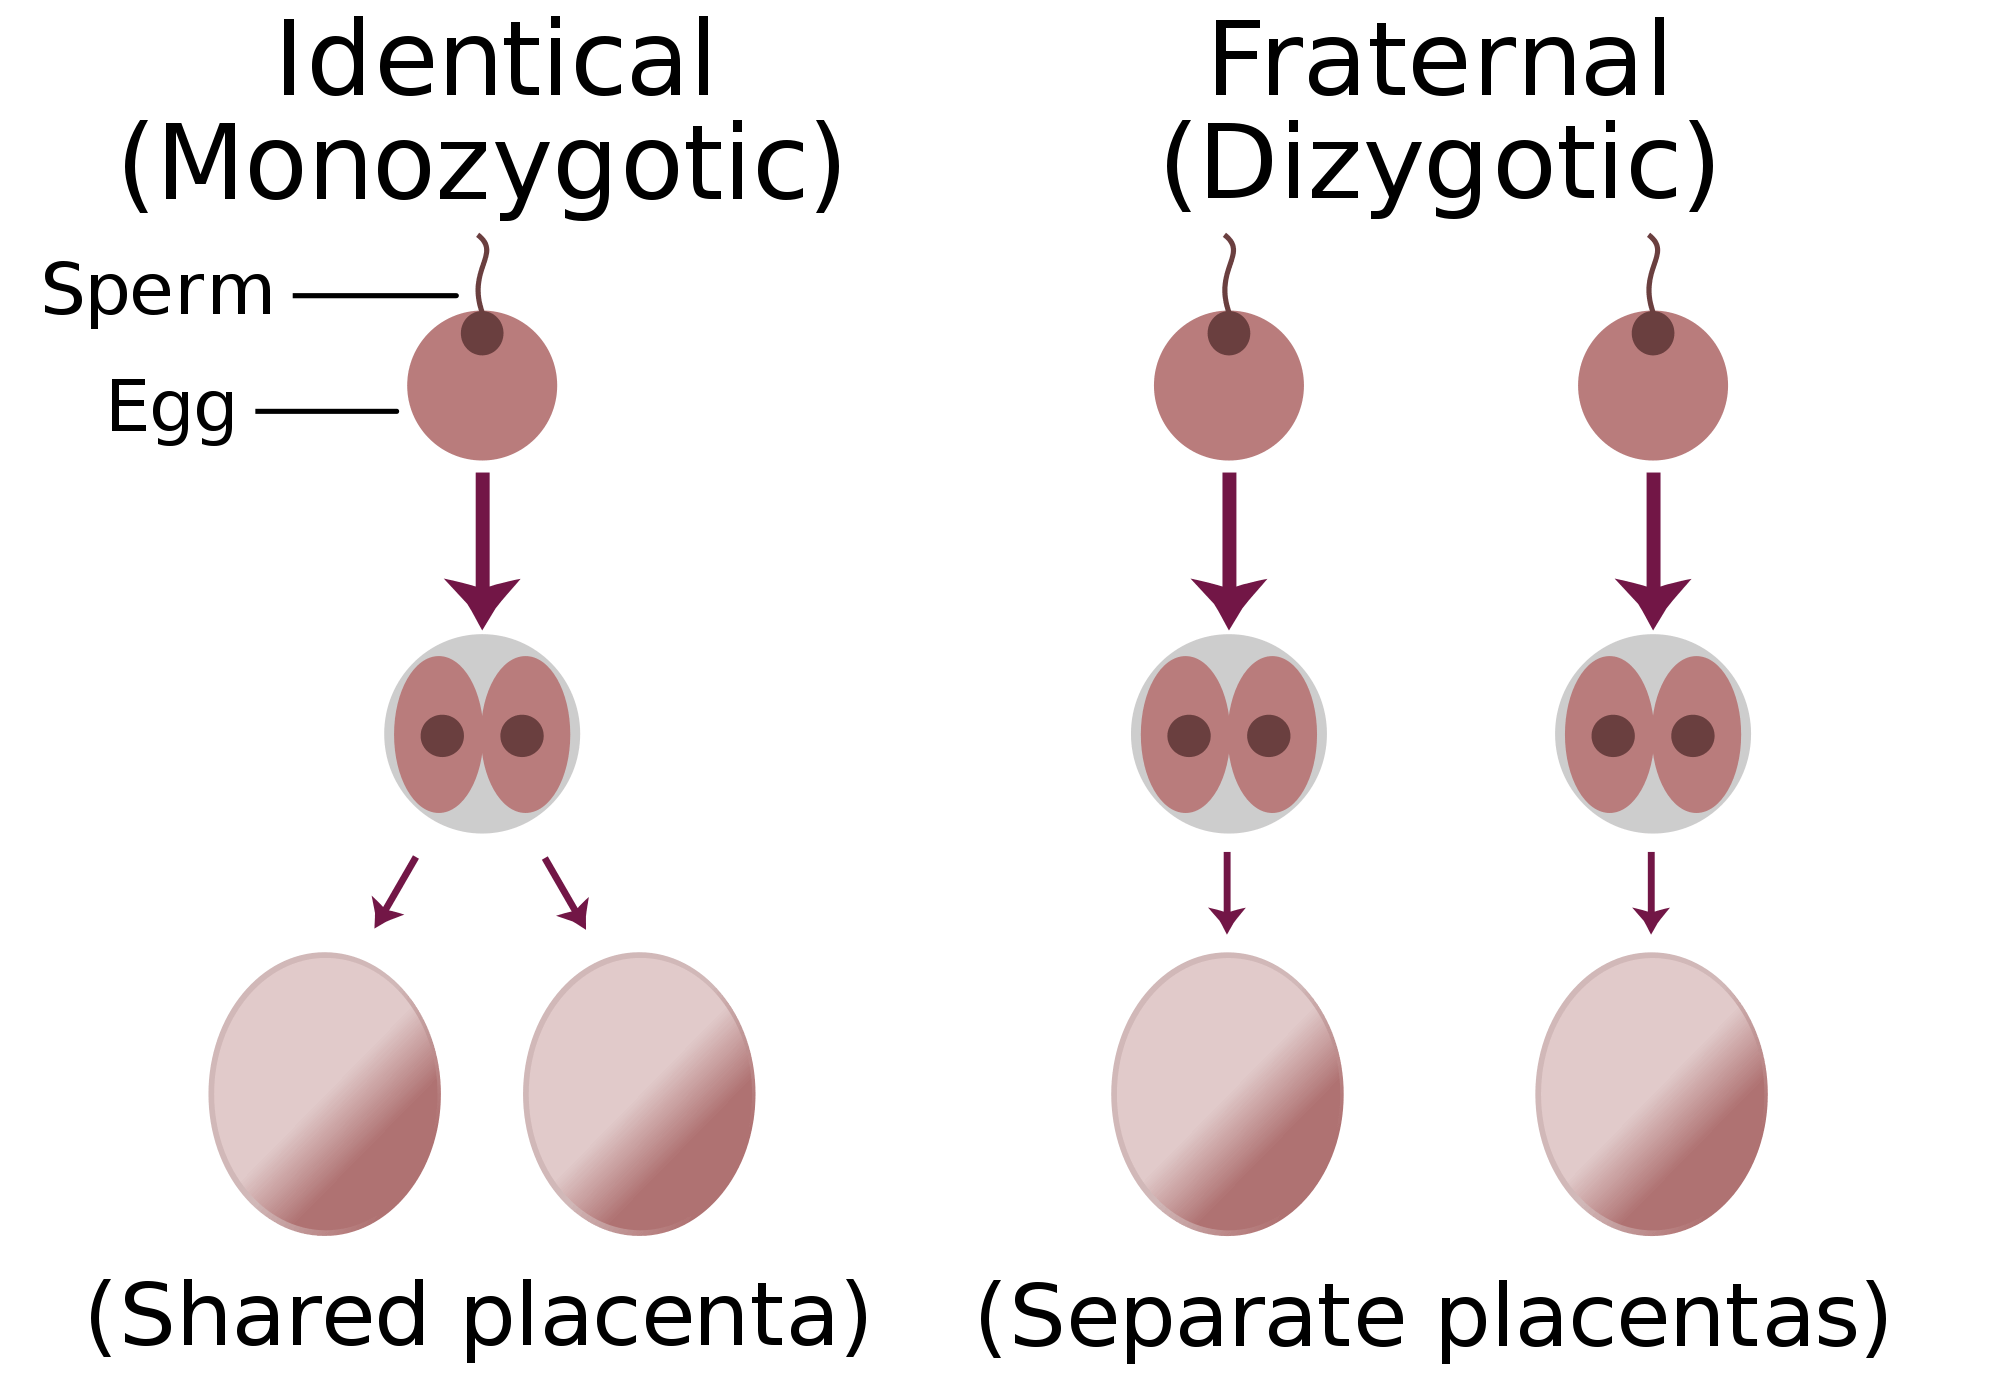 Identical-fraternal-sperm-egg